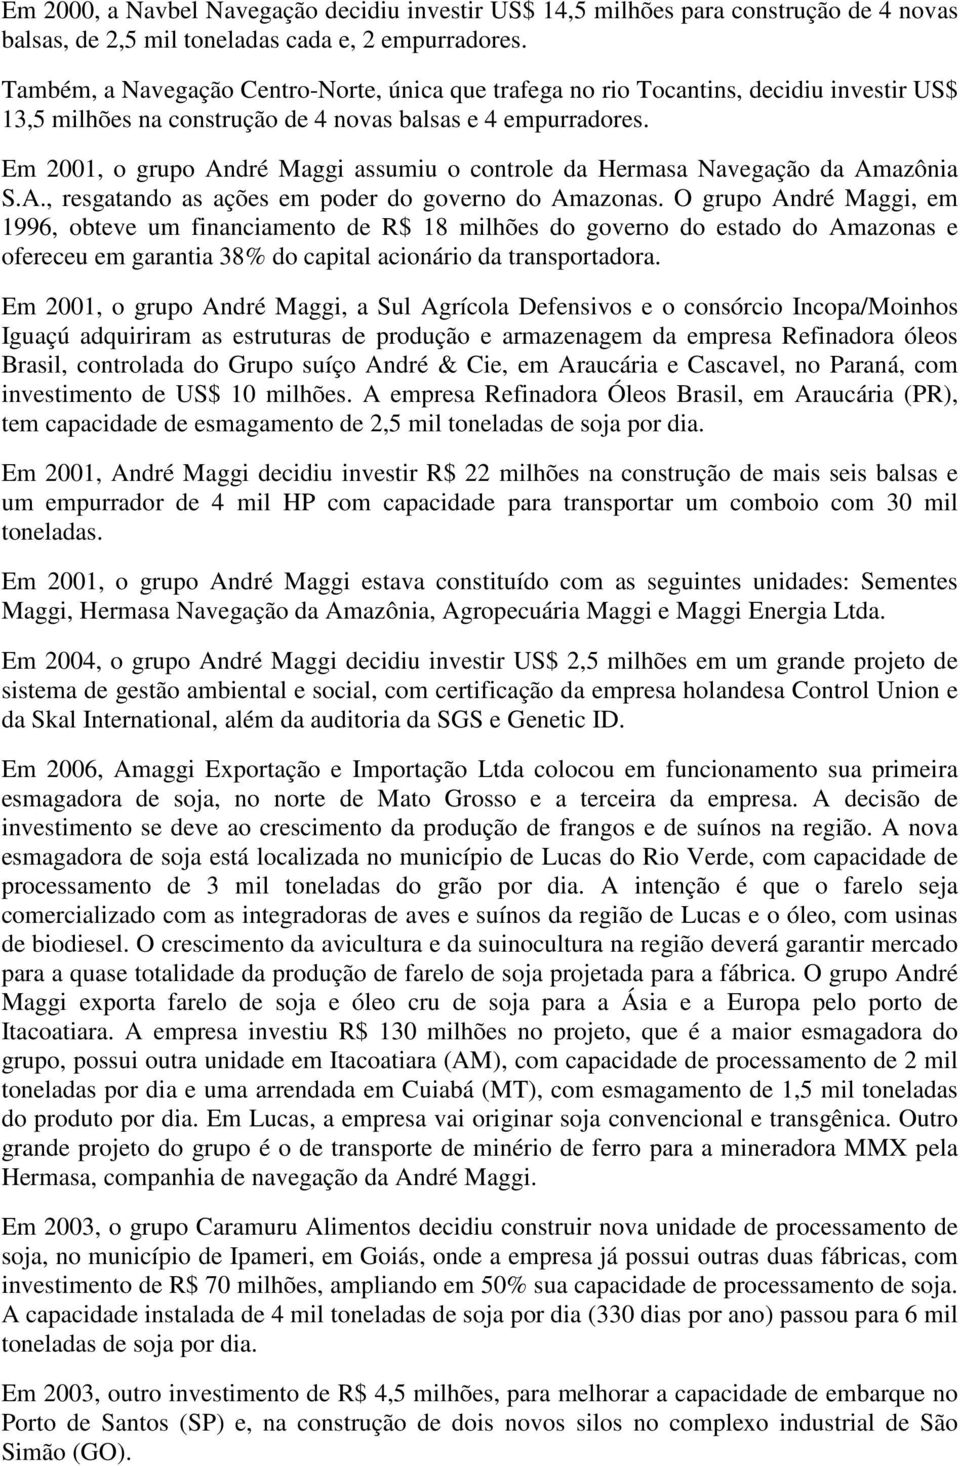 Em 2001, o grupo André Maggi assumiu o controle da Hermasa Navegação da Amazônia S.A., resgatando as ações em poder do governo do Amazonas.